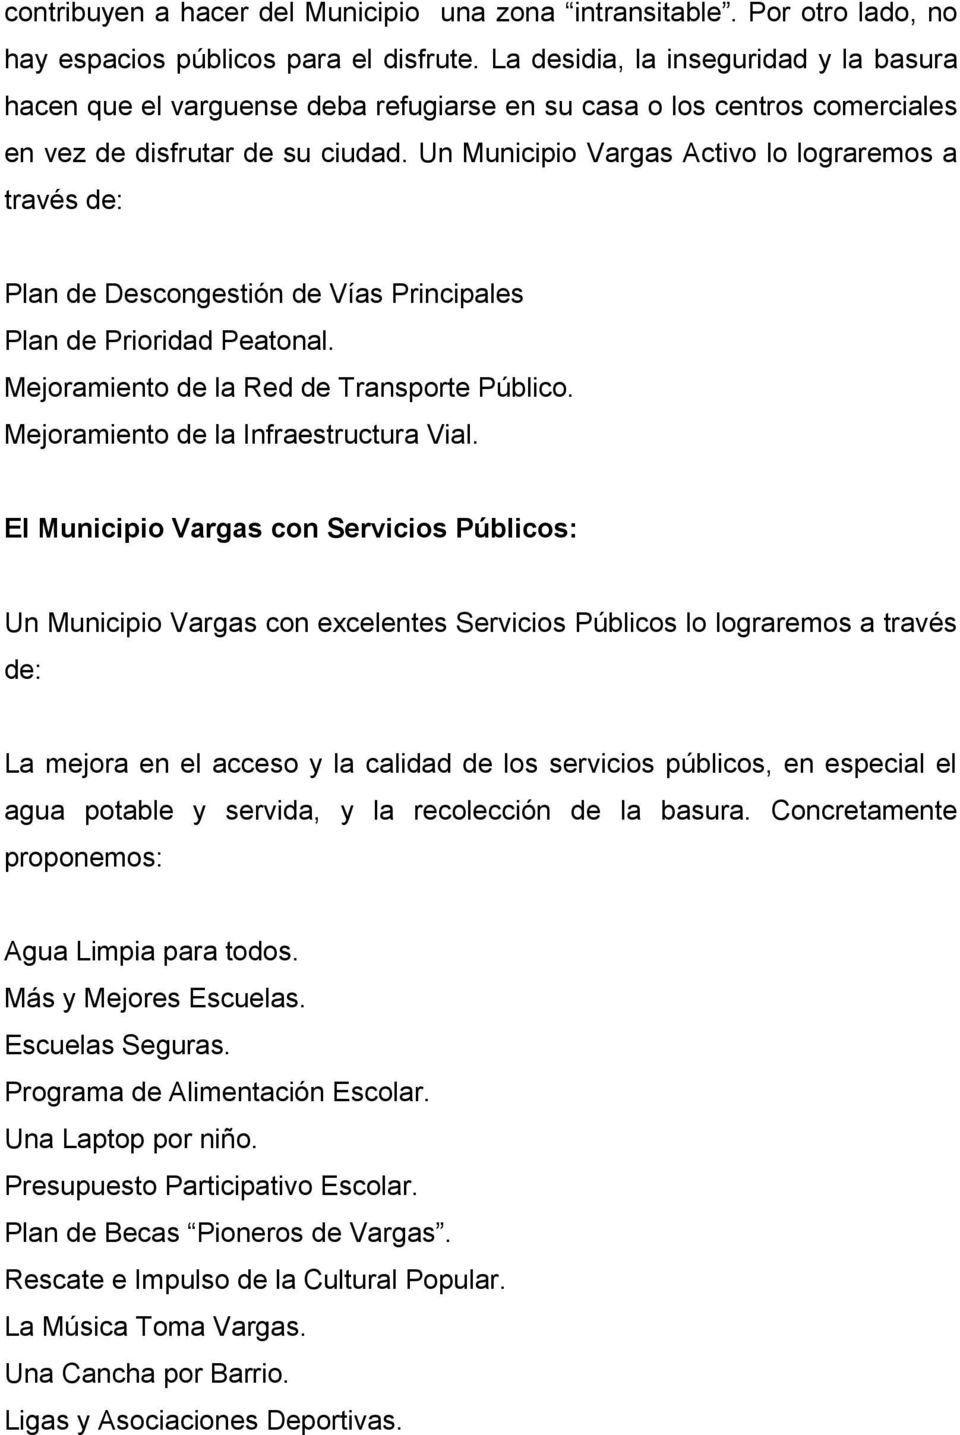 Un Municipio Vargas Activo lo lograremos a través de: Plan de Descongestión de Vías Principales Plan de Prioridad Peatonal. Mejoramiento de la Red de Transporte Público.